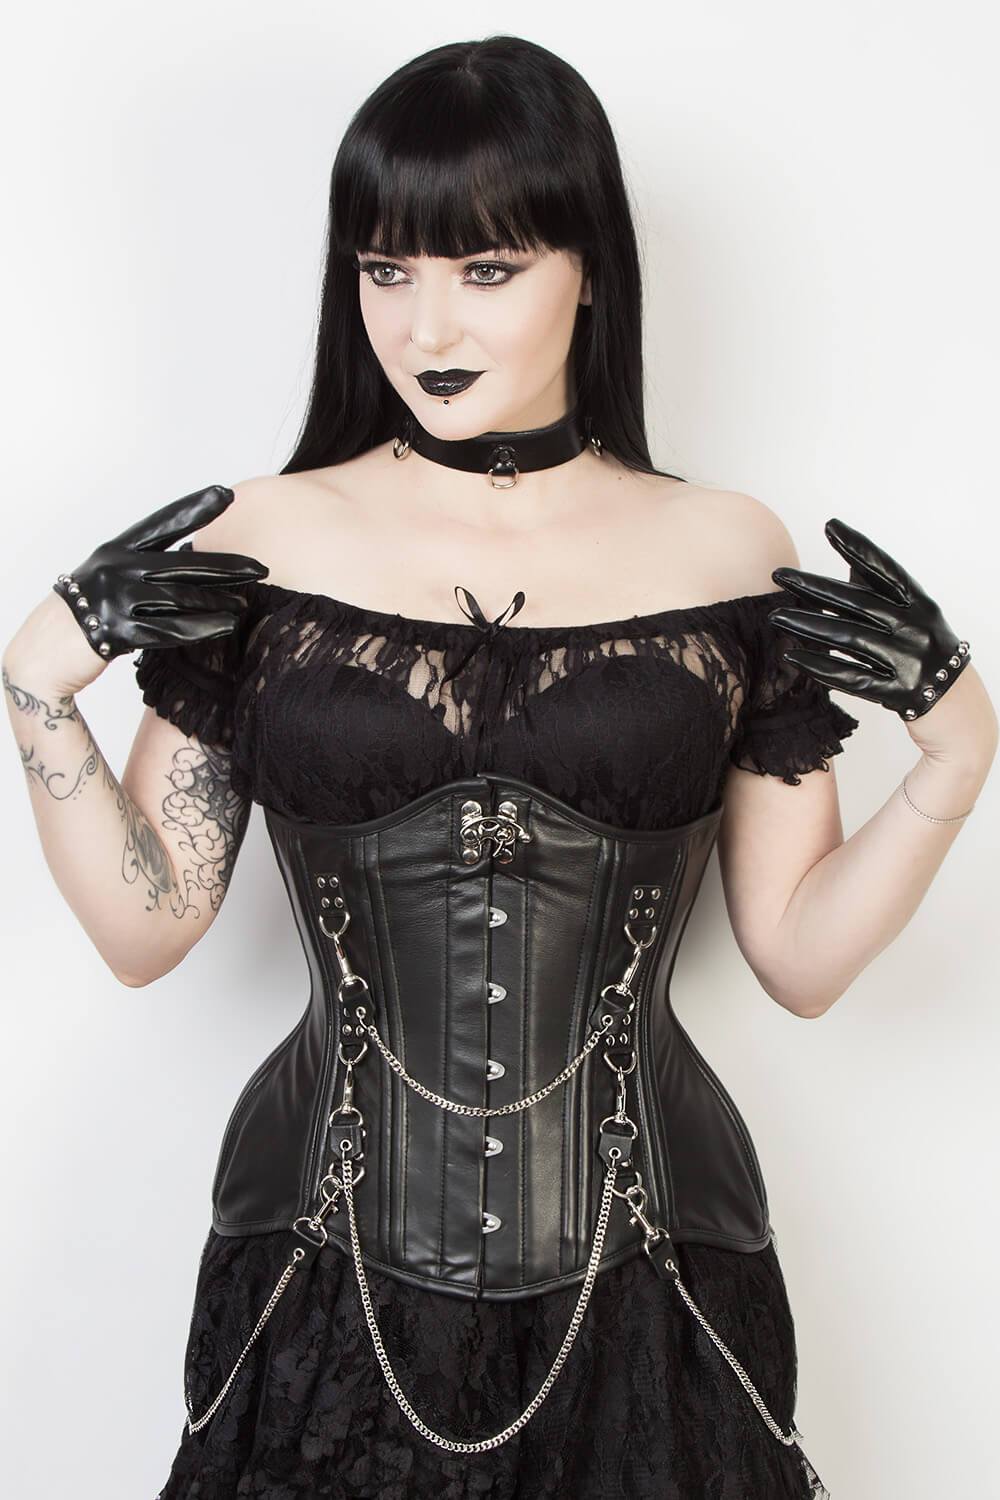 https://www.corsetdeal.com/cdn/shop/products/EL-207_F_Elyzza_London_Corset_Corsetdeal_Bespoke_Corset_waist_training_corset.jpg?v=1553509708